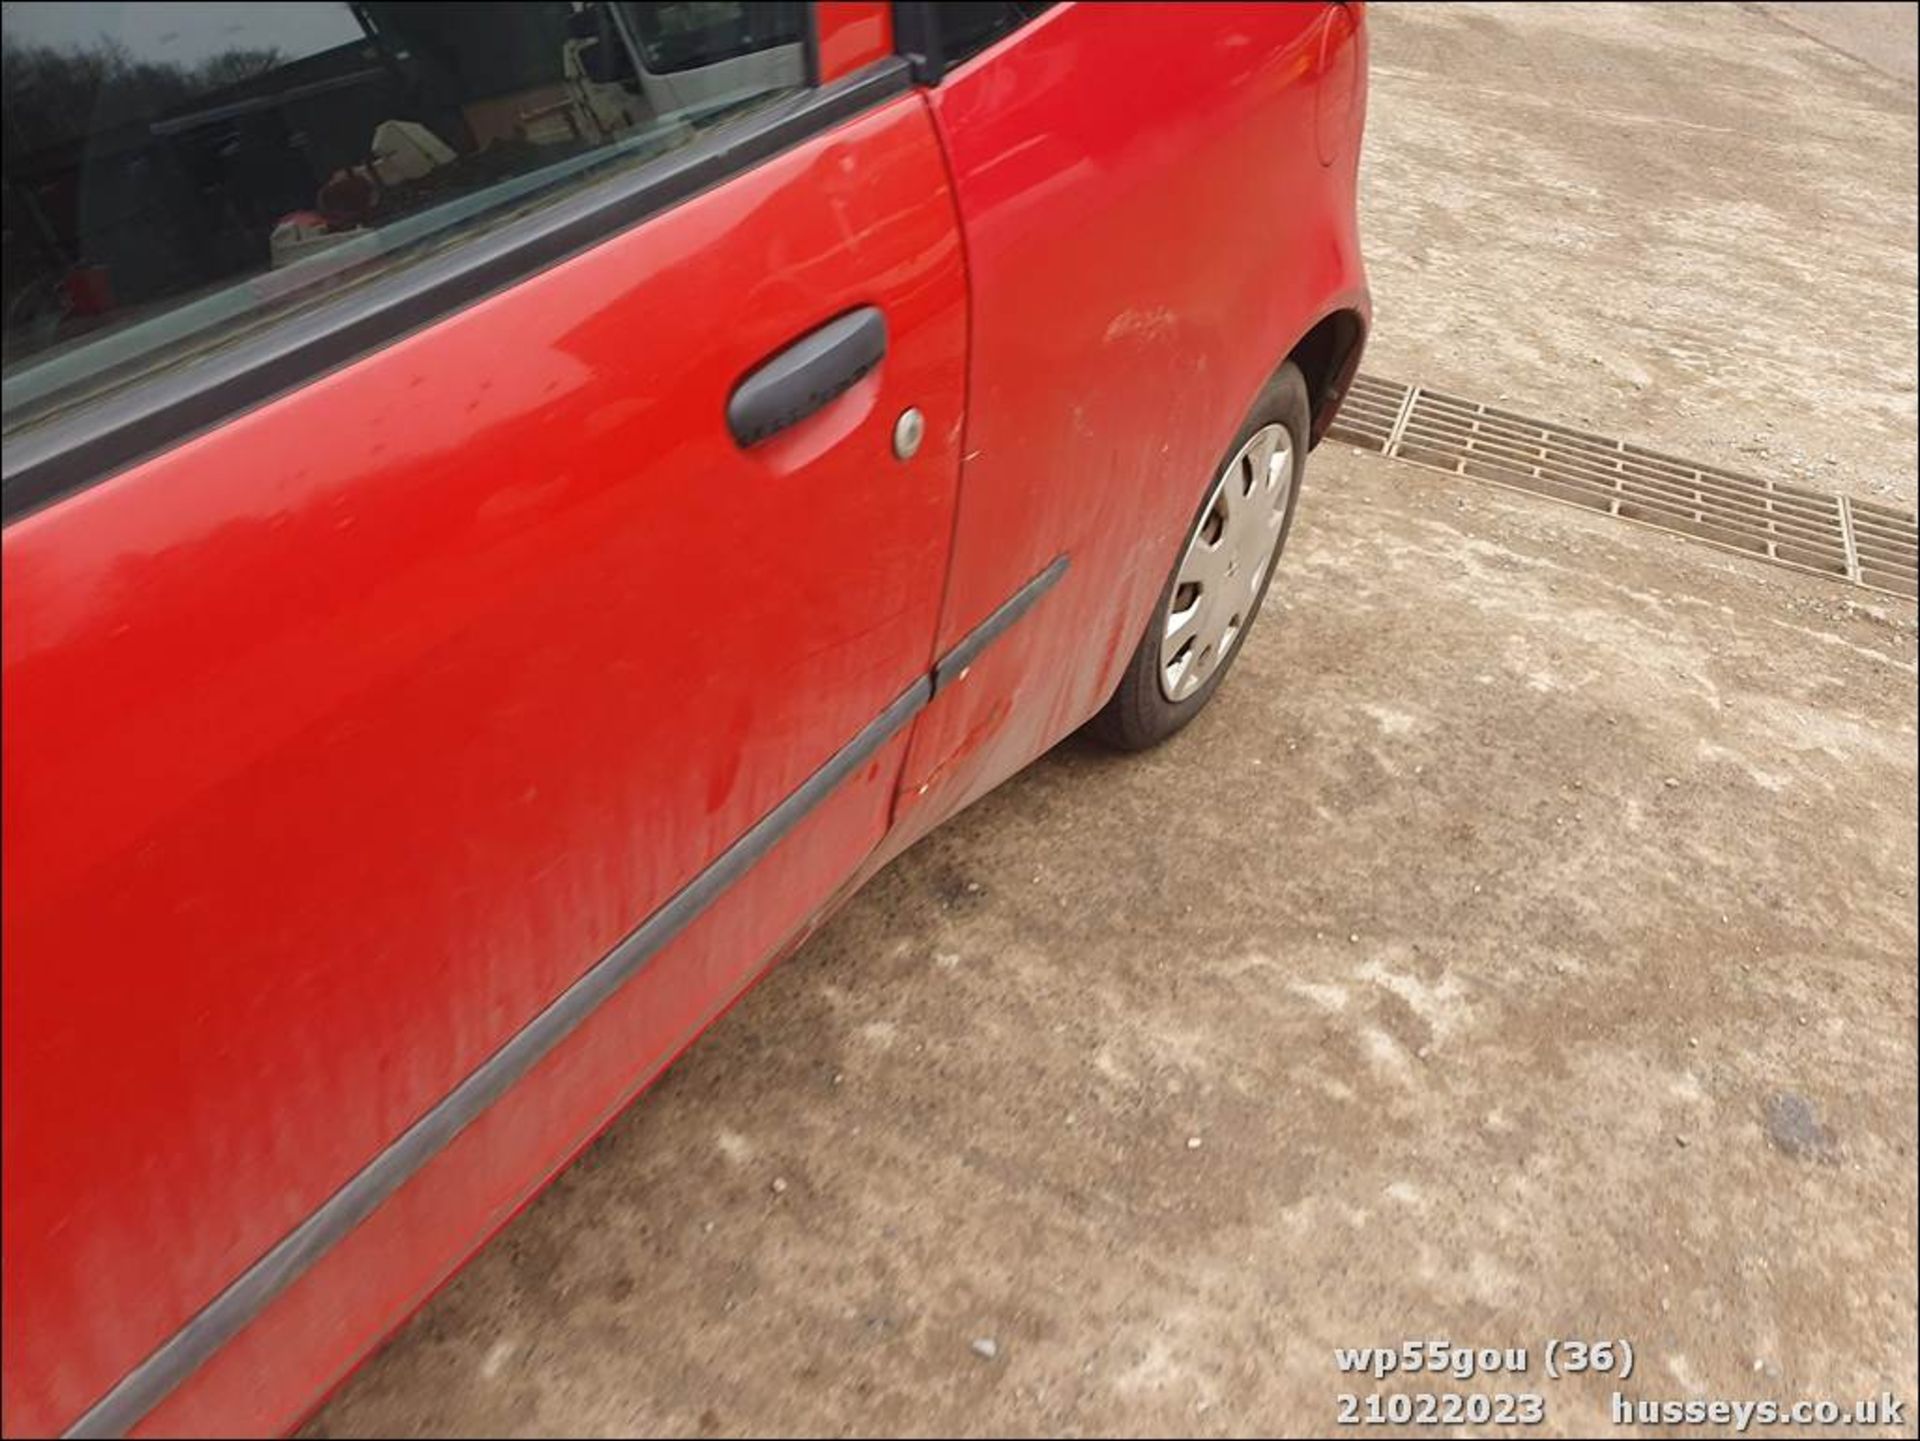 06/55 MITSUBISHI COLT RED - 1124cc 3dr Hatchback (Red) - Image 36 of 48